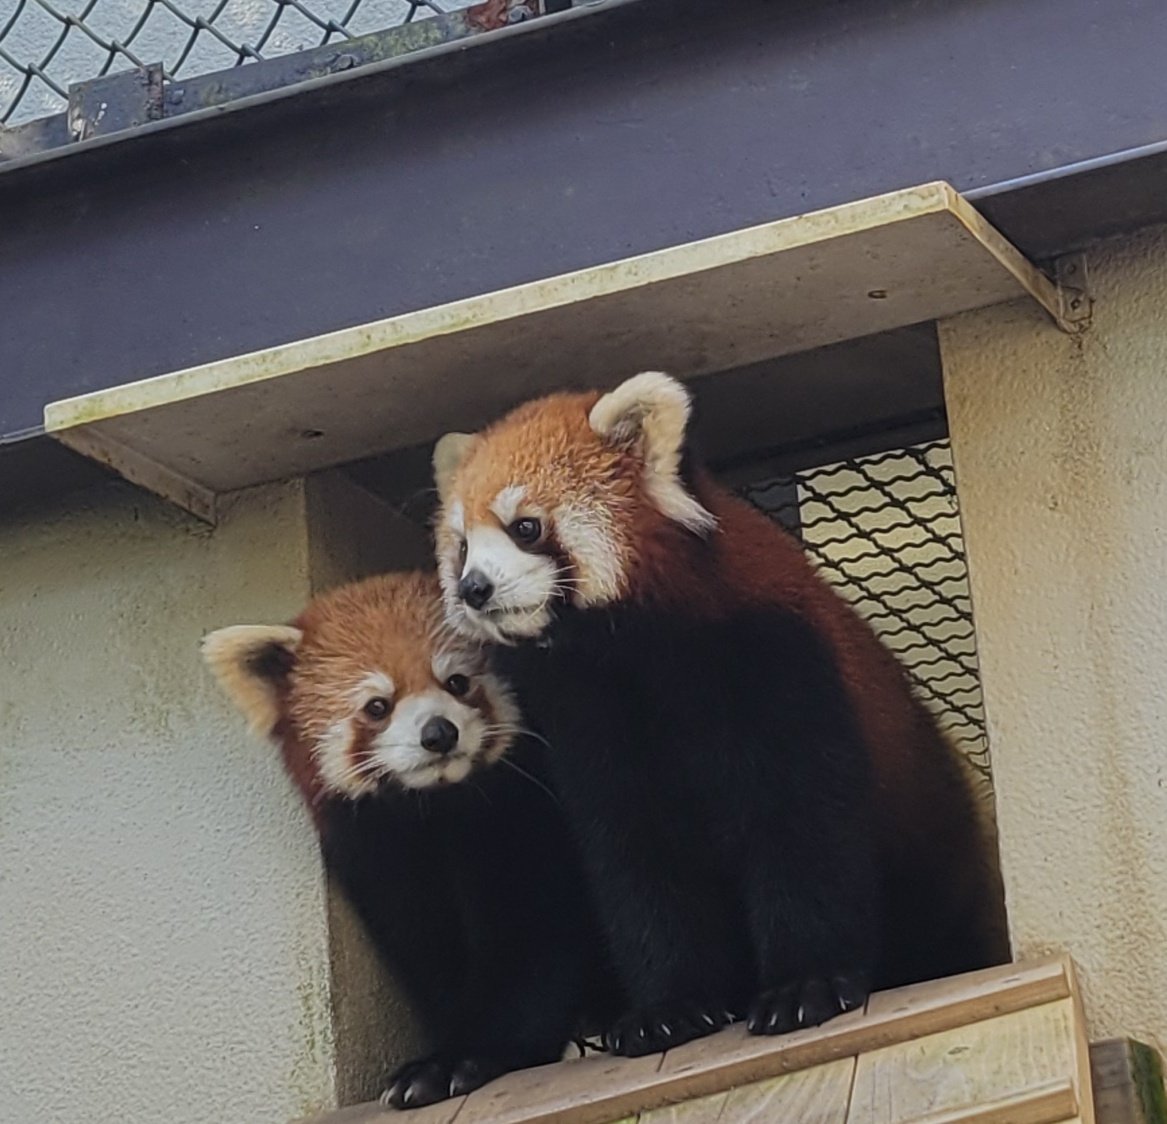 5月12日(日)は母の日💐
そこで、昨年母になったシンファへ、感謝の気持ちを込めて㊙️プレゼントをします。
また、飼育員が見た仔育ての様子や最近の様子などをお話します。
お時間ある方は、5月12日(日)午後1時15分にレッサー舎へお越し下さい😊
#熊本市動植物園
#シセンレッサーパンダ
#シンファ♀️